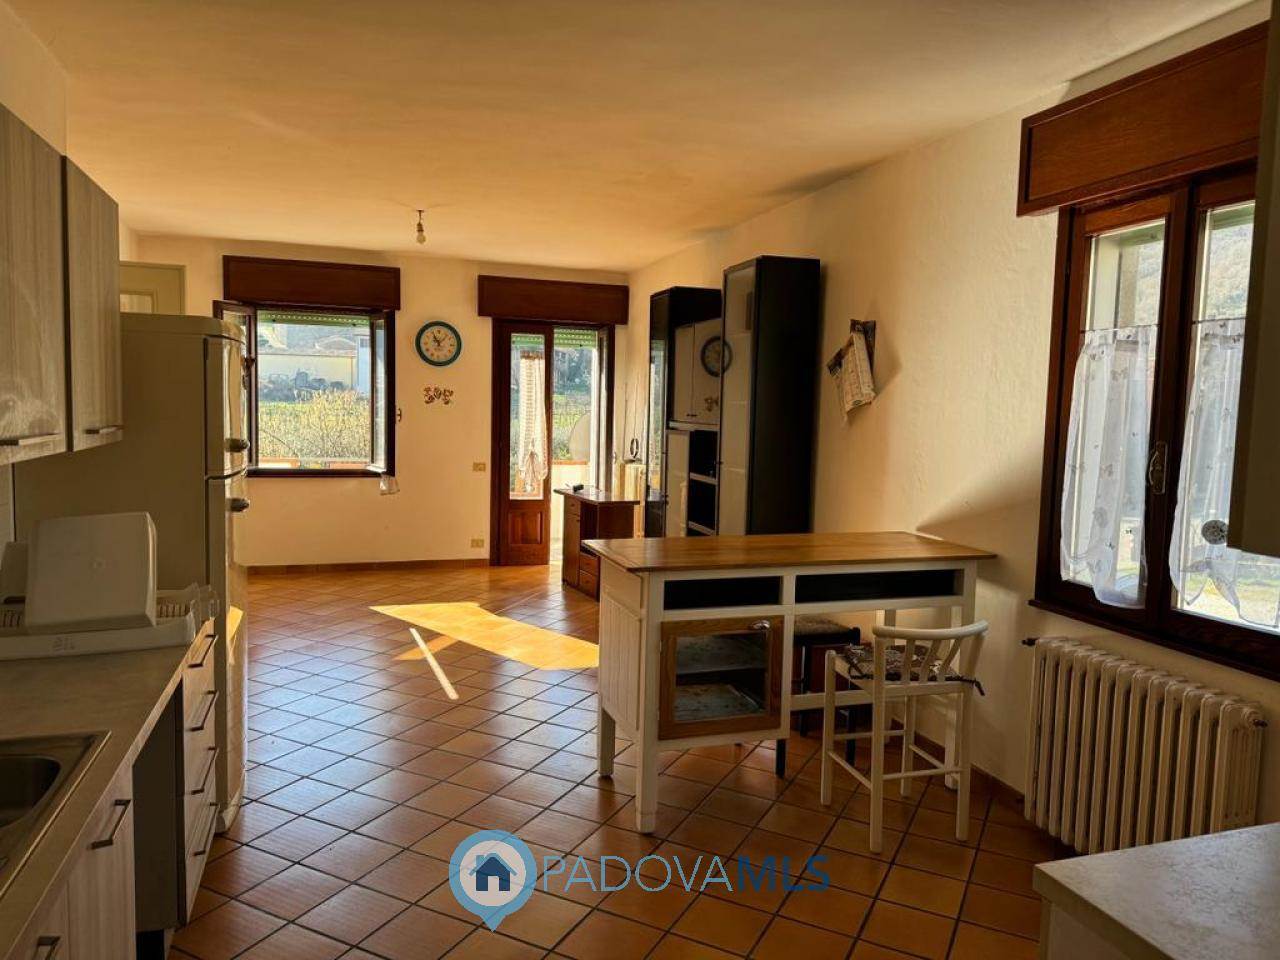 Appartamento in vendita a Galzignano Terme, 4 locali, prezzo € 138.000 | PortaleAgenzieImmobiliari.it